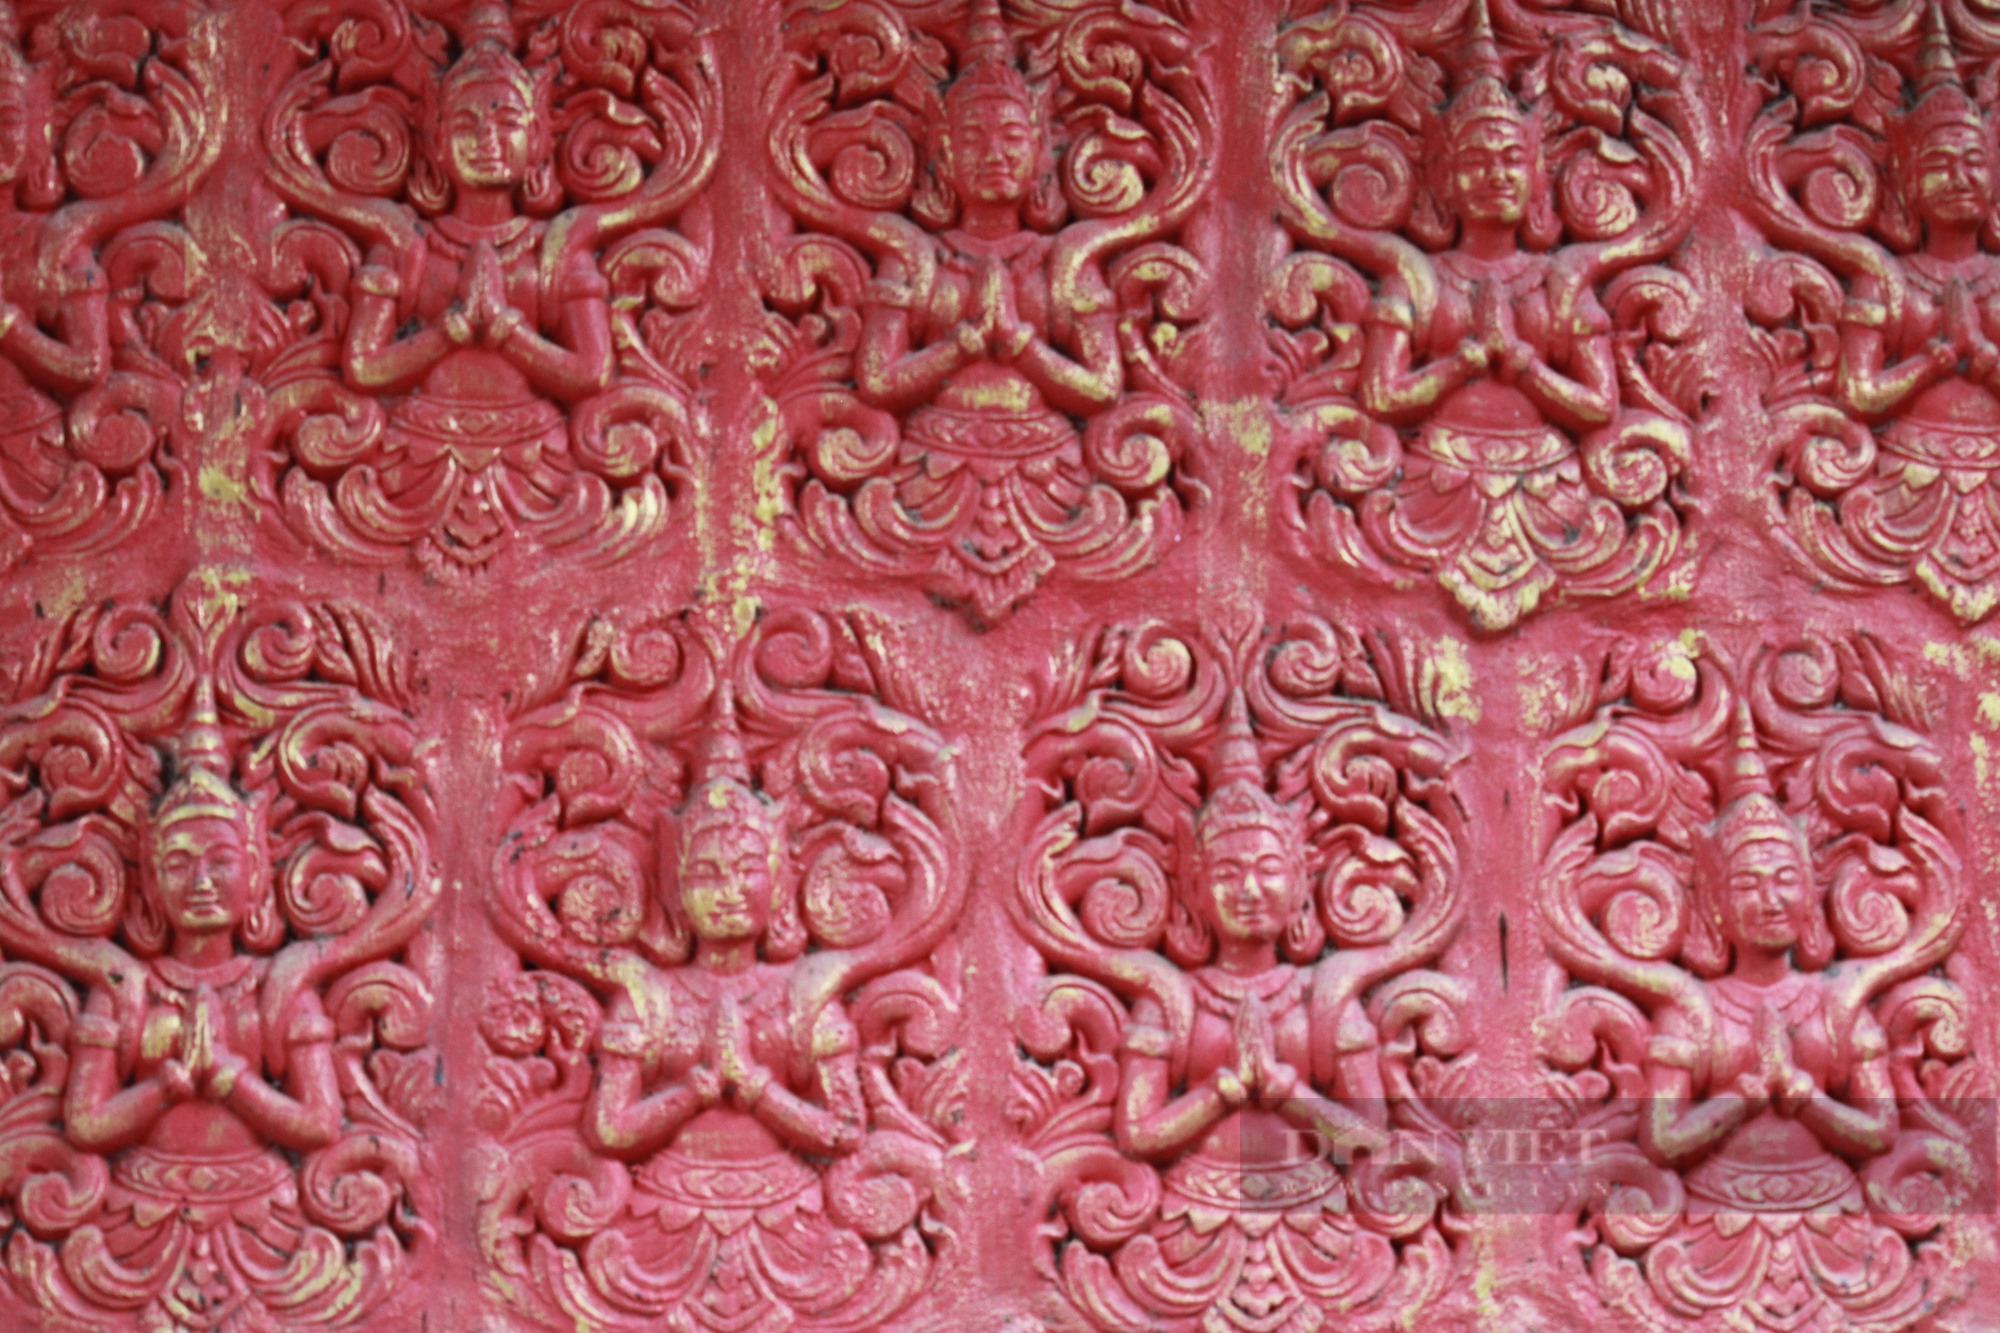 Kiến trúc độc đáo tại Pháp viện Thánh Sơn ở Khánh Hòa - Ảnh 10.